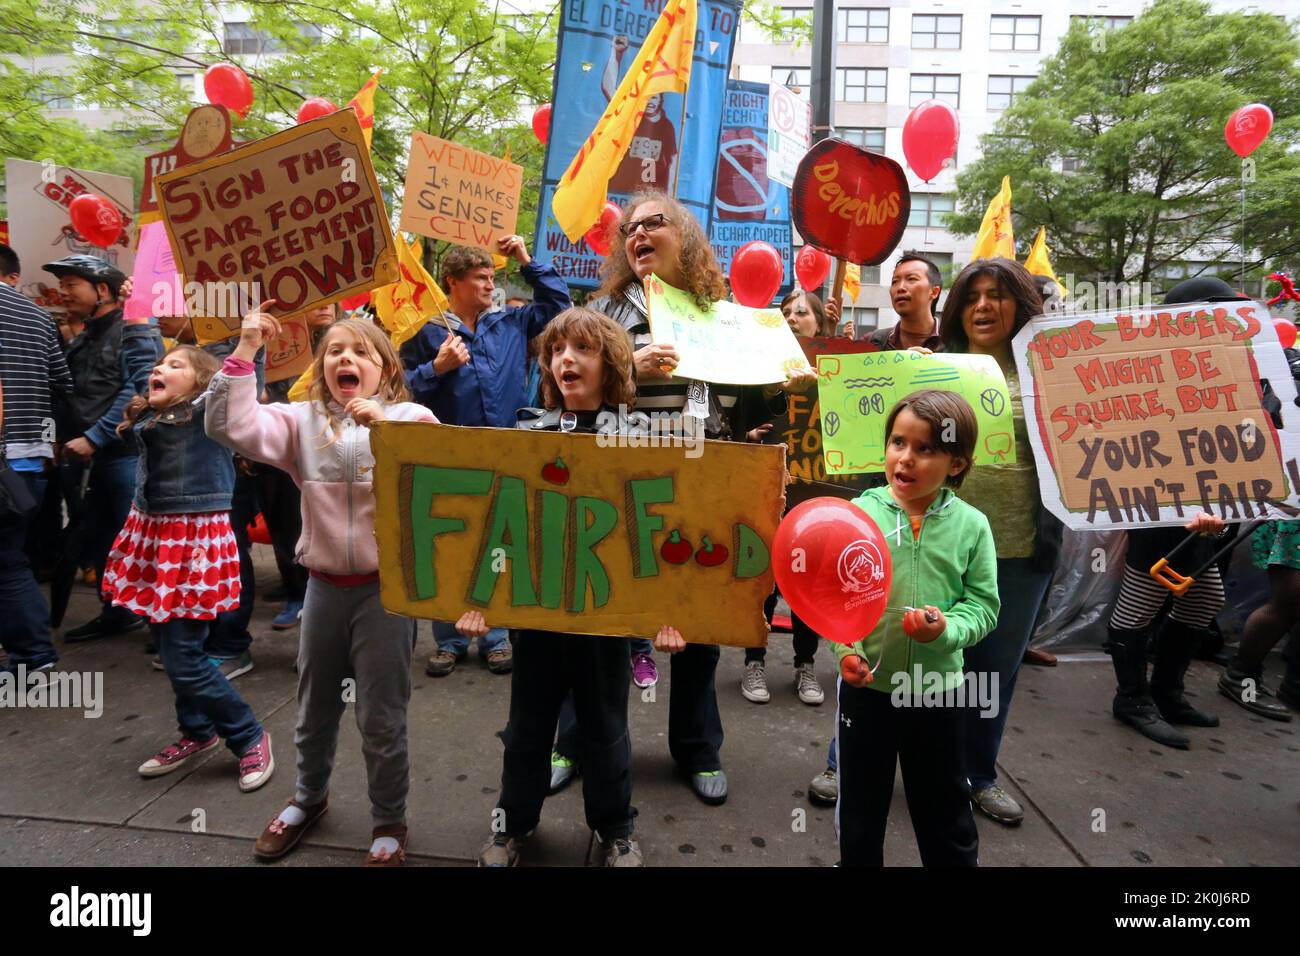 New York, 18 maggio 2013. Coalizione di lavoratori Immokalee, e alleati marzo per Fair Food per portare la consapevolezza di ... vedere add'l info per la didascalia completa Foto Stock